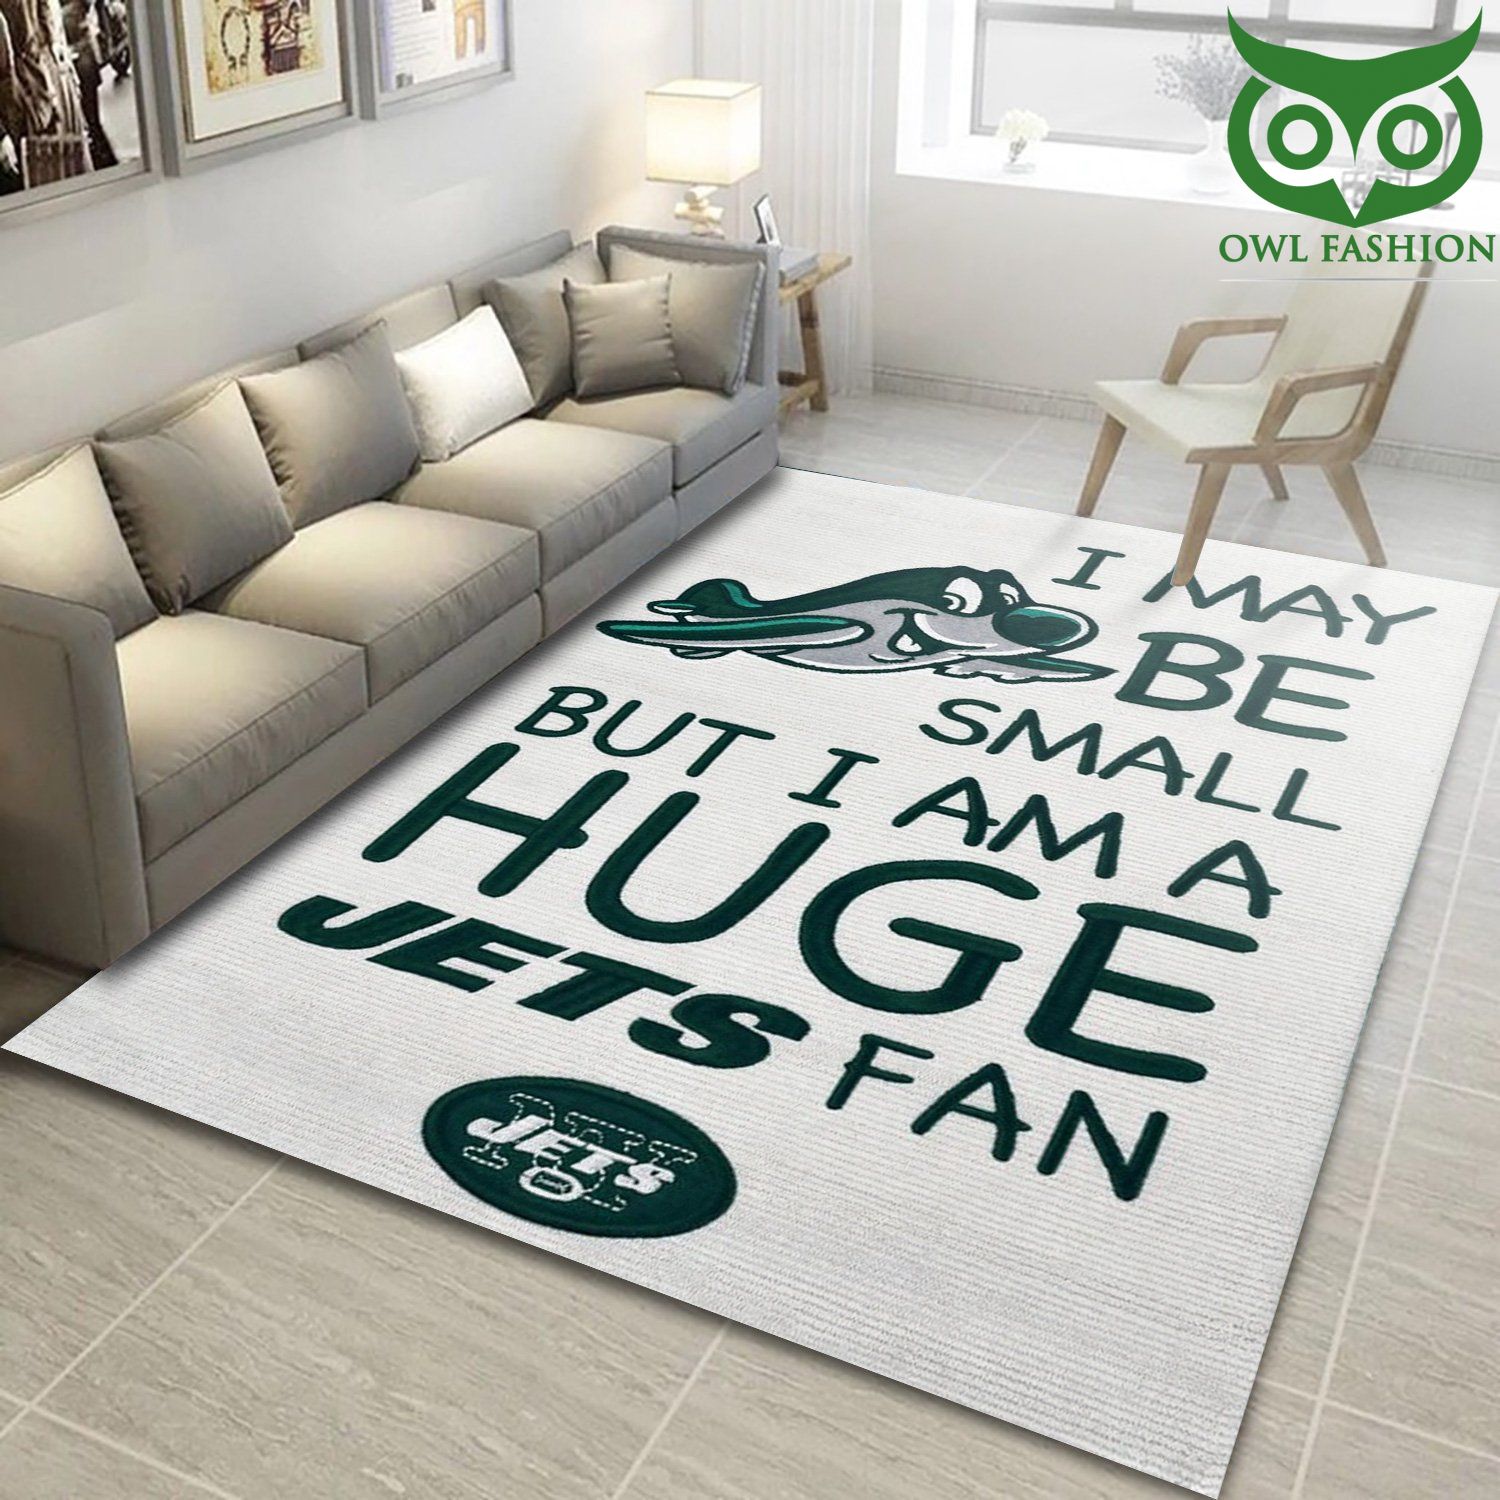 2 New York Jets Nfl 1960 carpet rug